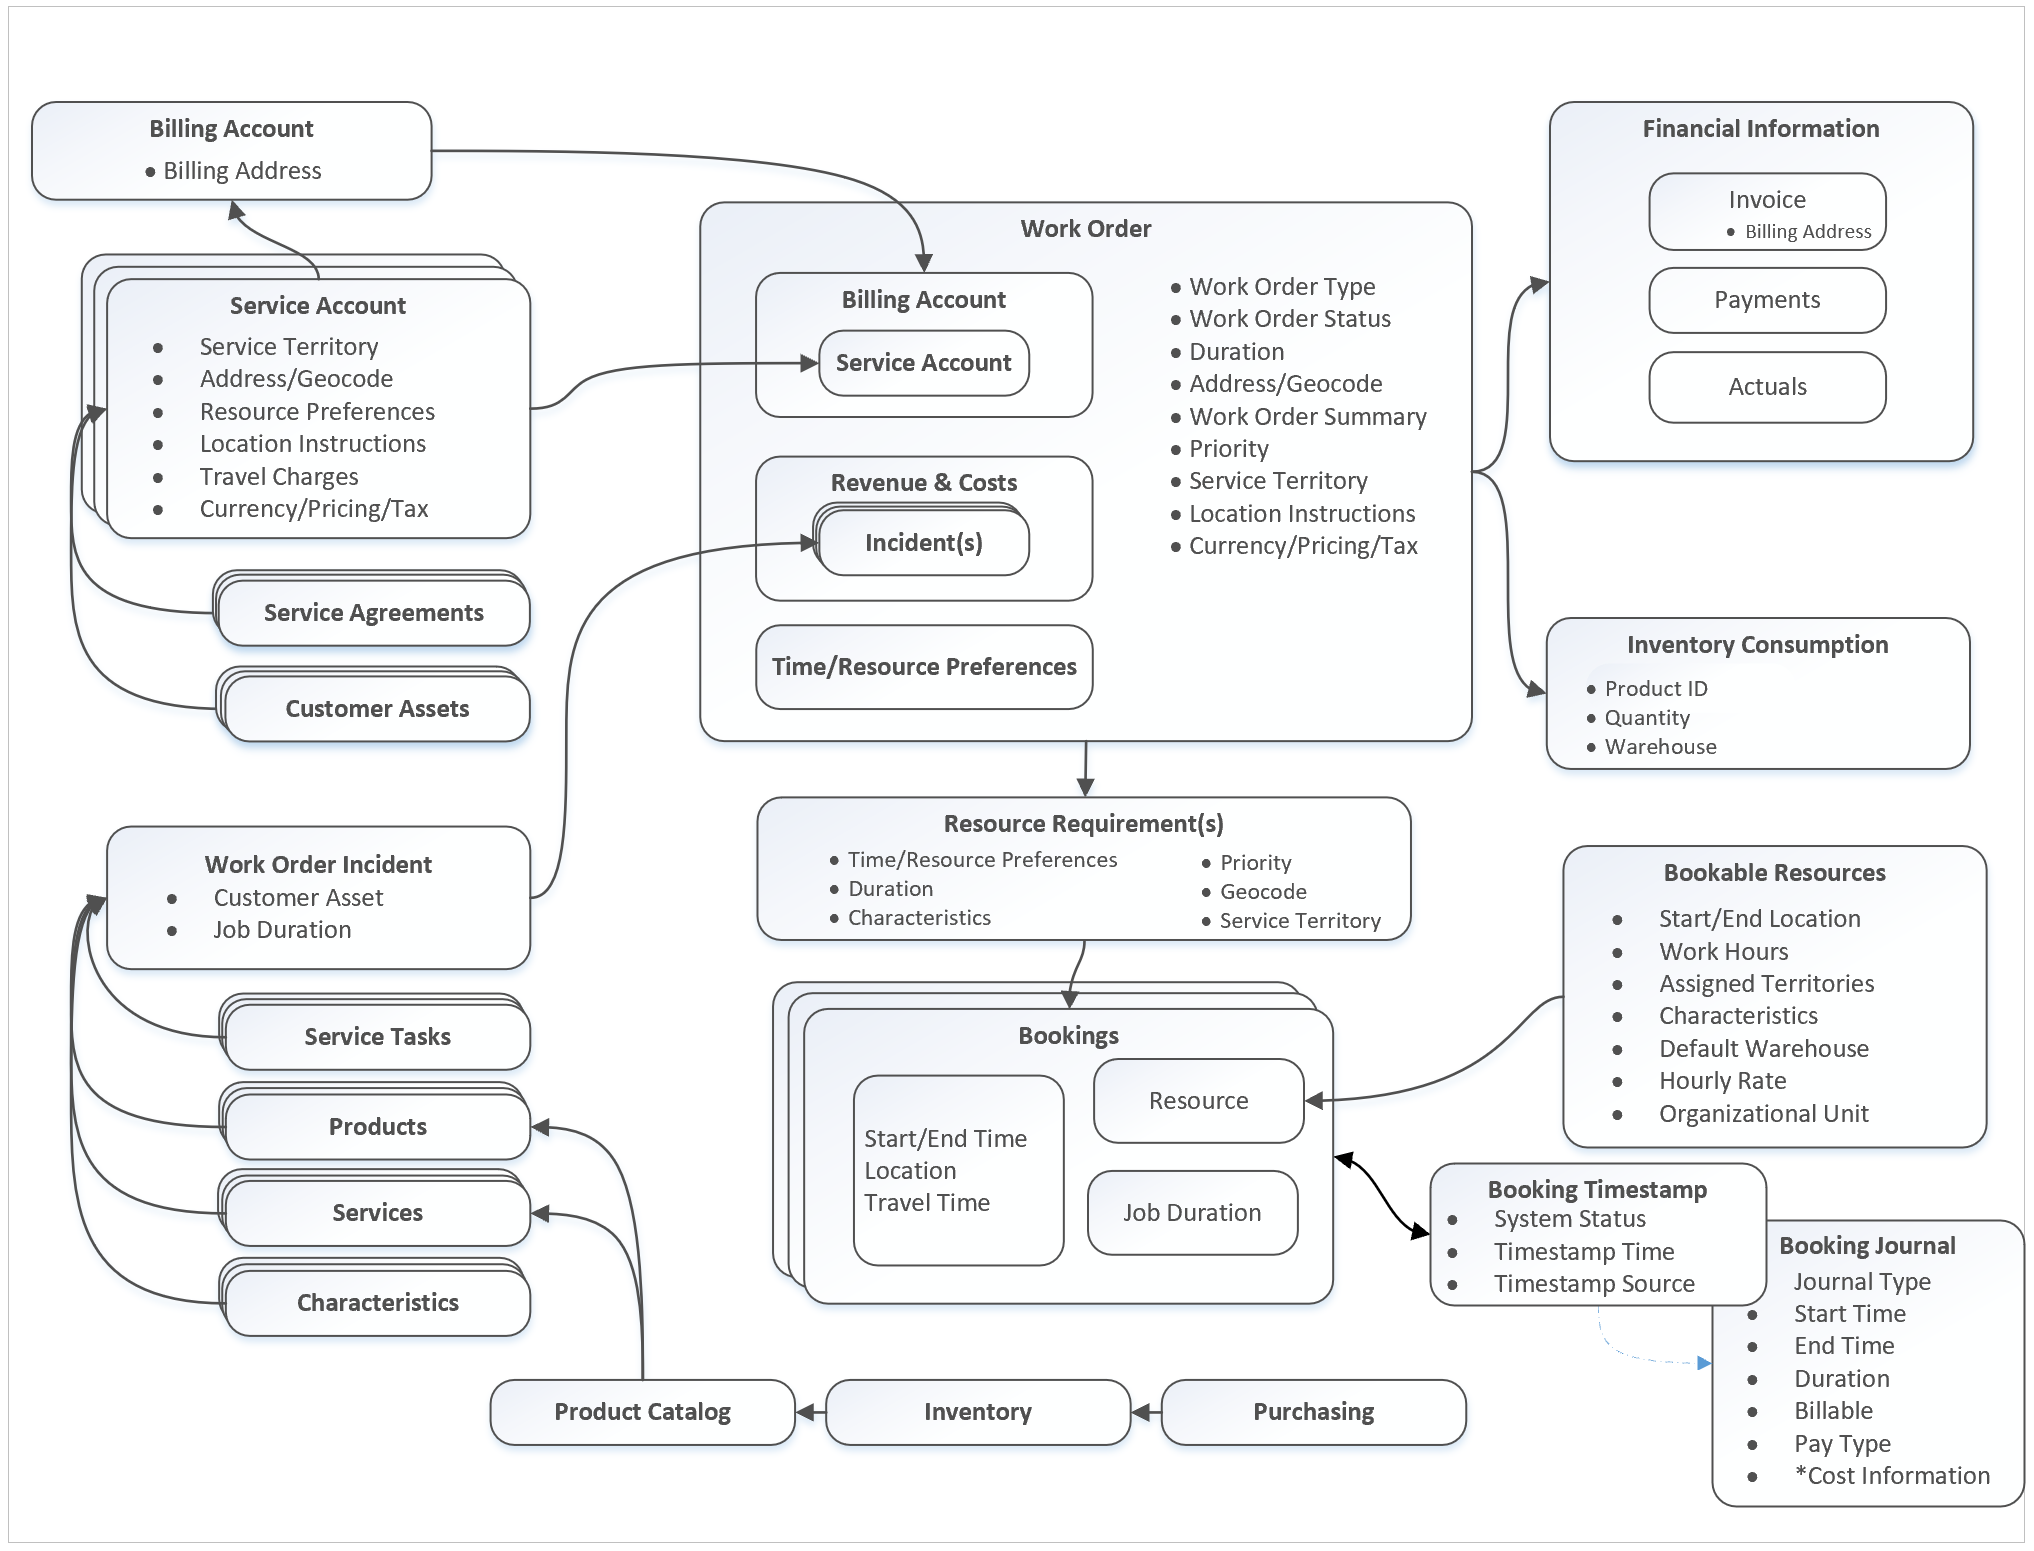 Diagramma dell'architettura del processo dell'ordine di lavoro.